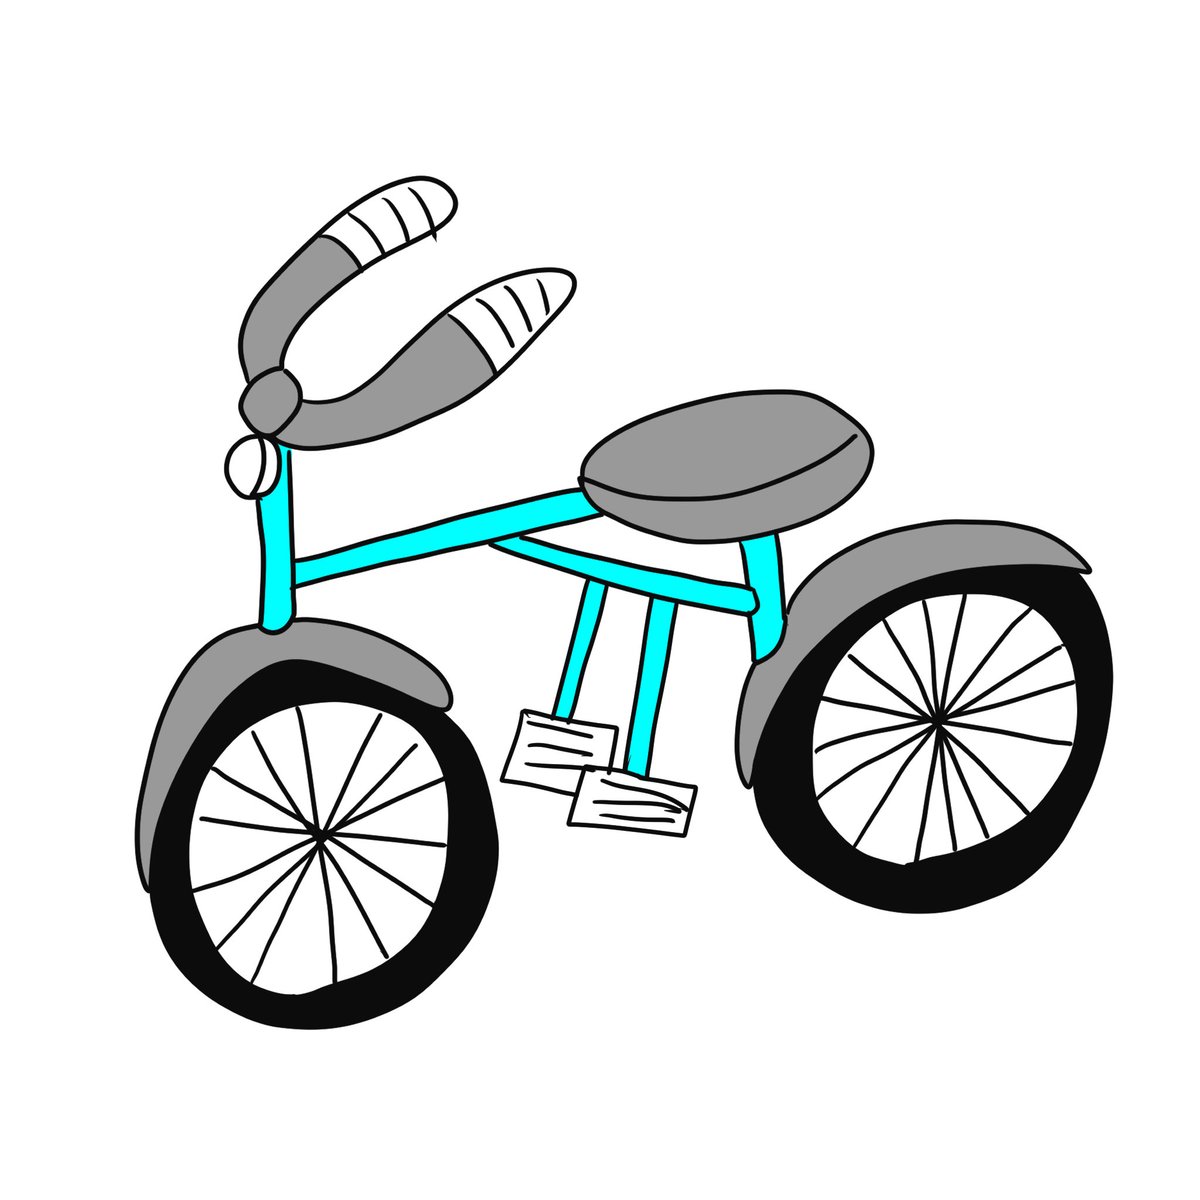 「描くのが苦手な自転車を、思い出しながら描いてみた。いつも乗っているのに、構造を理」|倉田真由美のイラスト